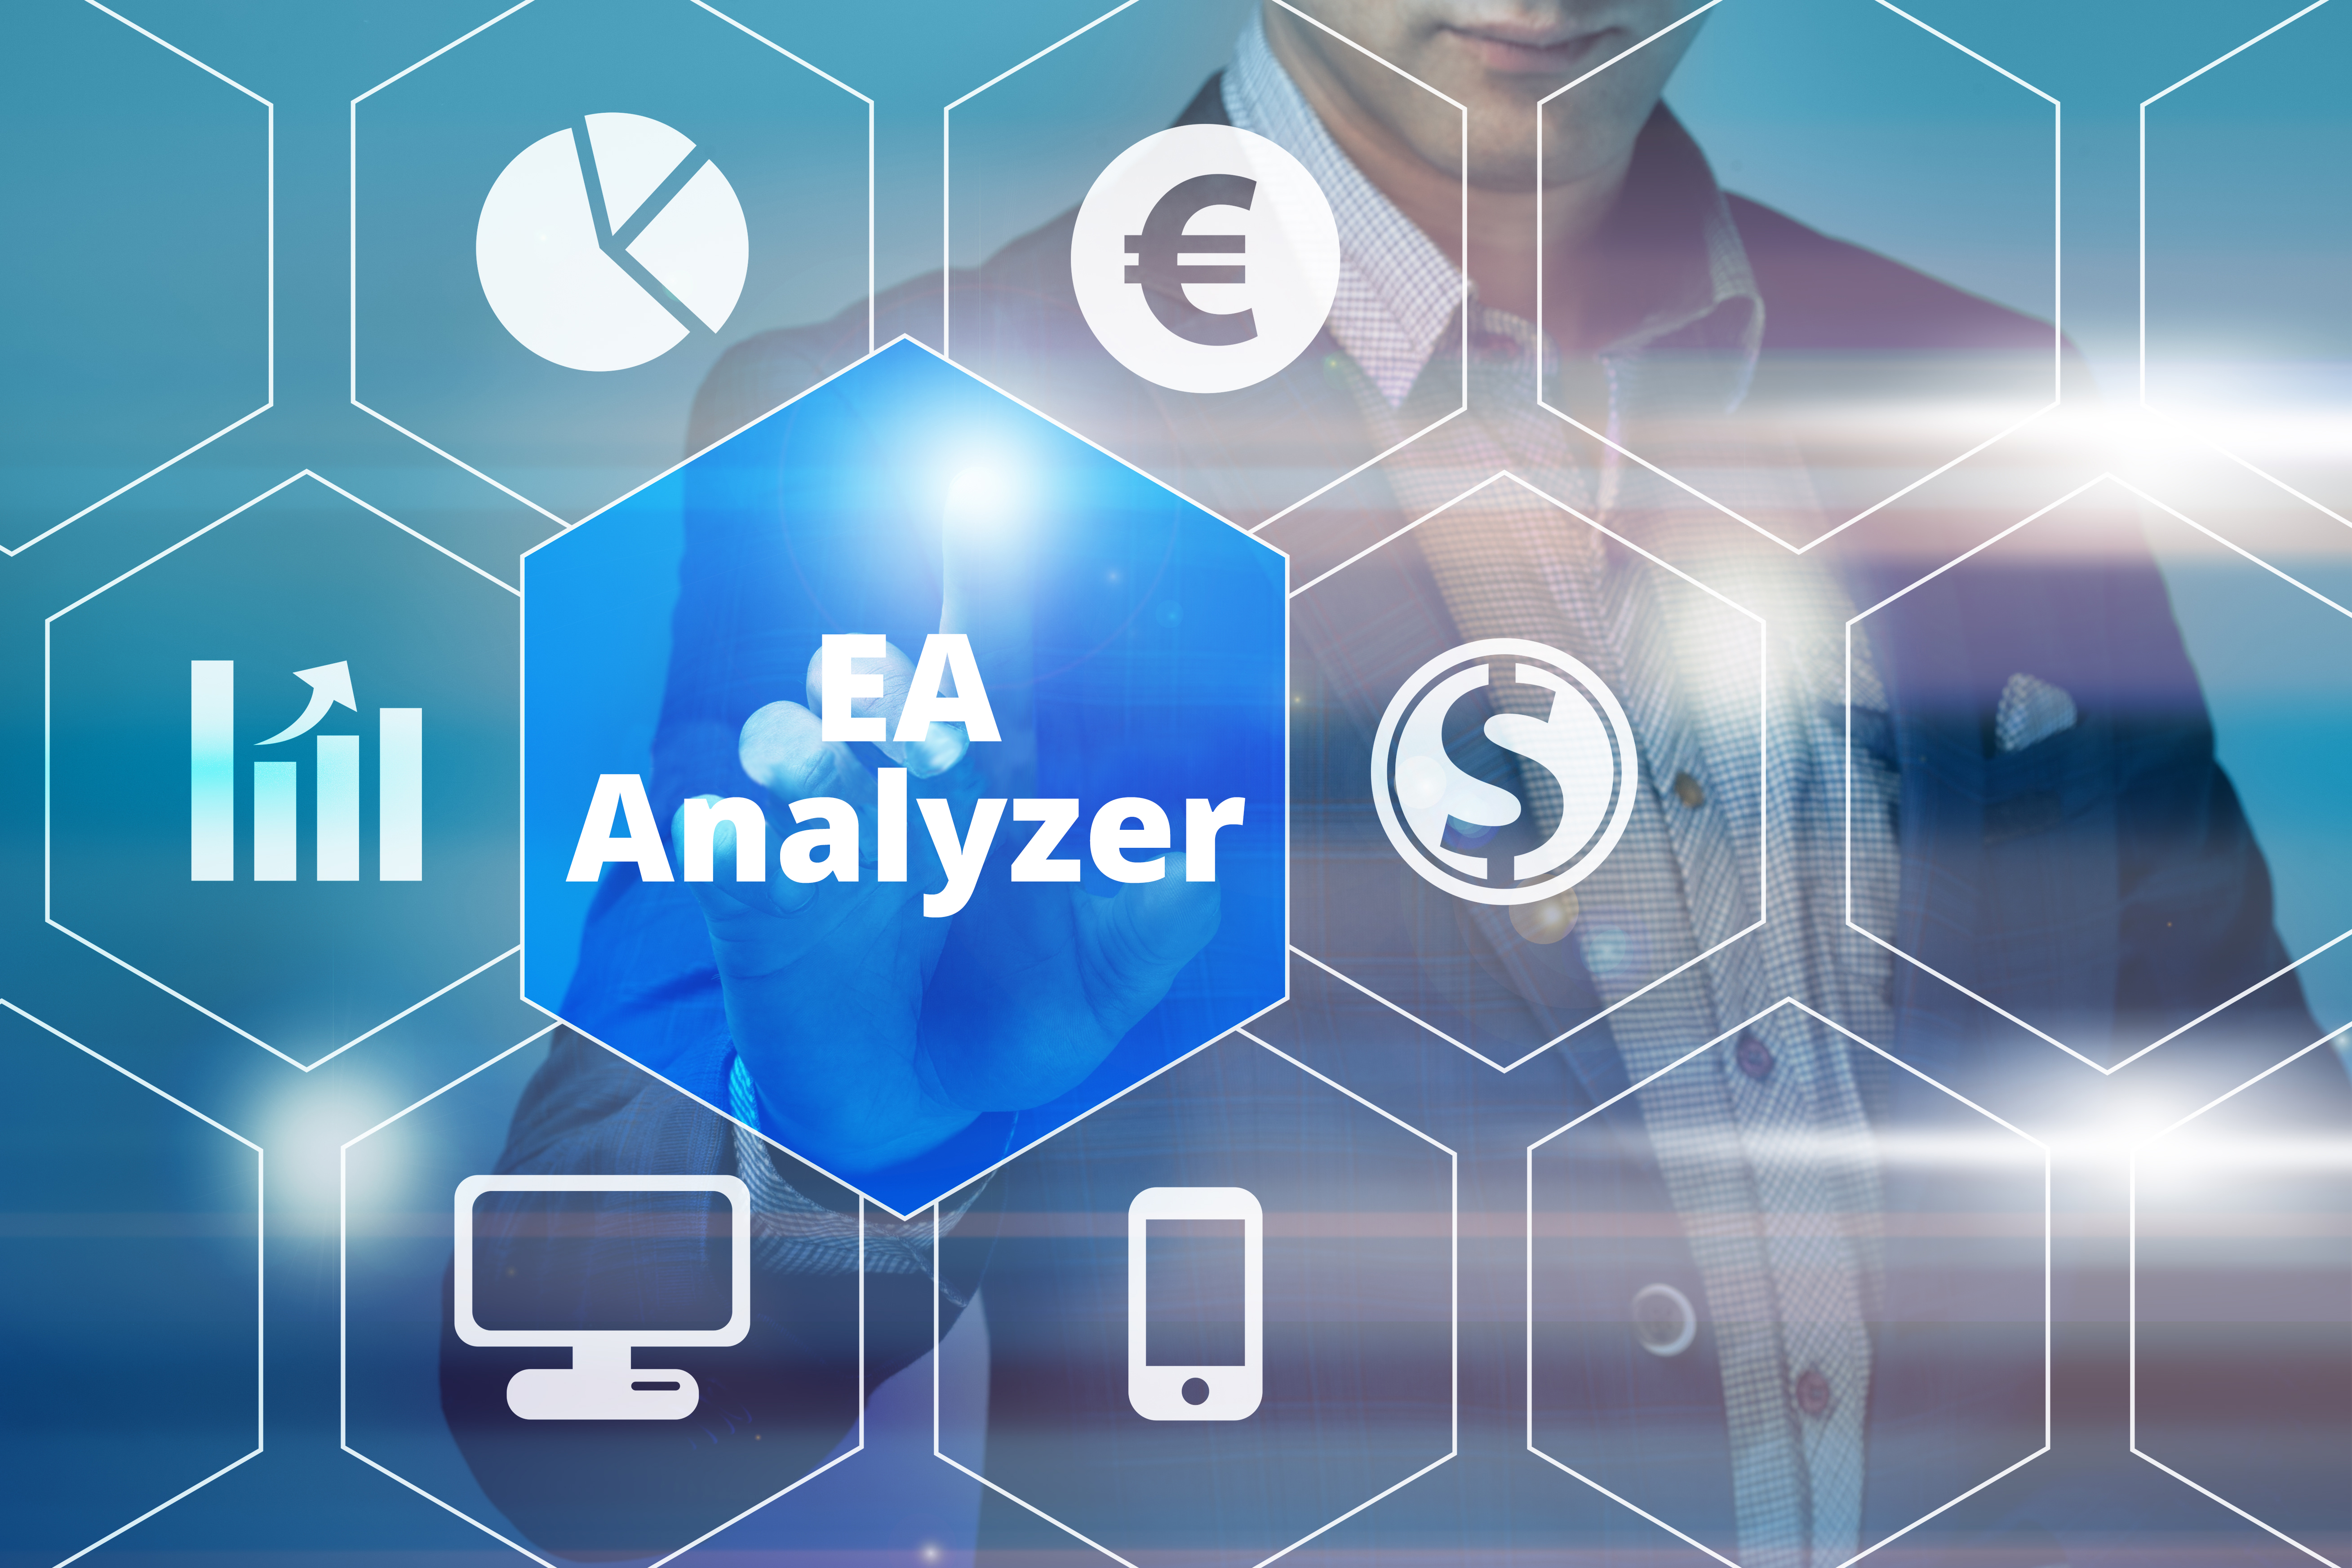 EA Analyzer